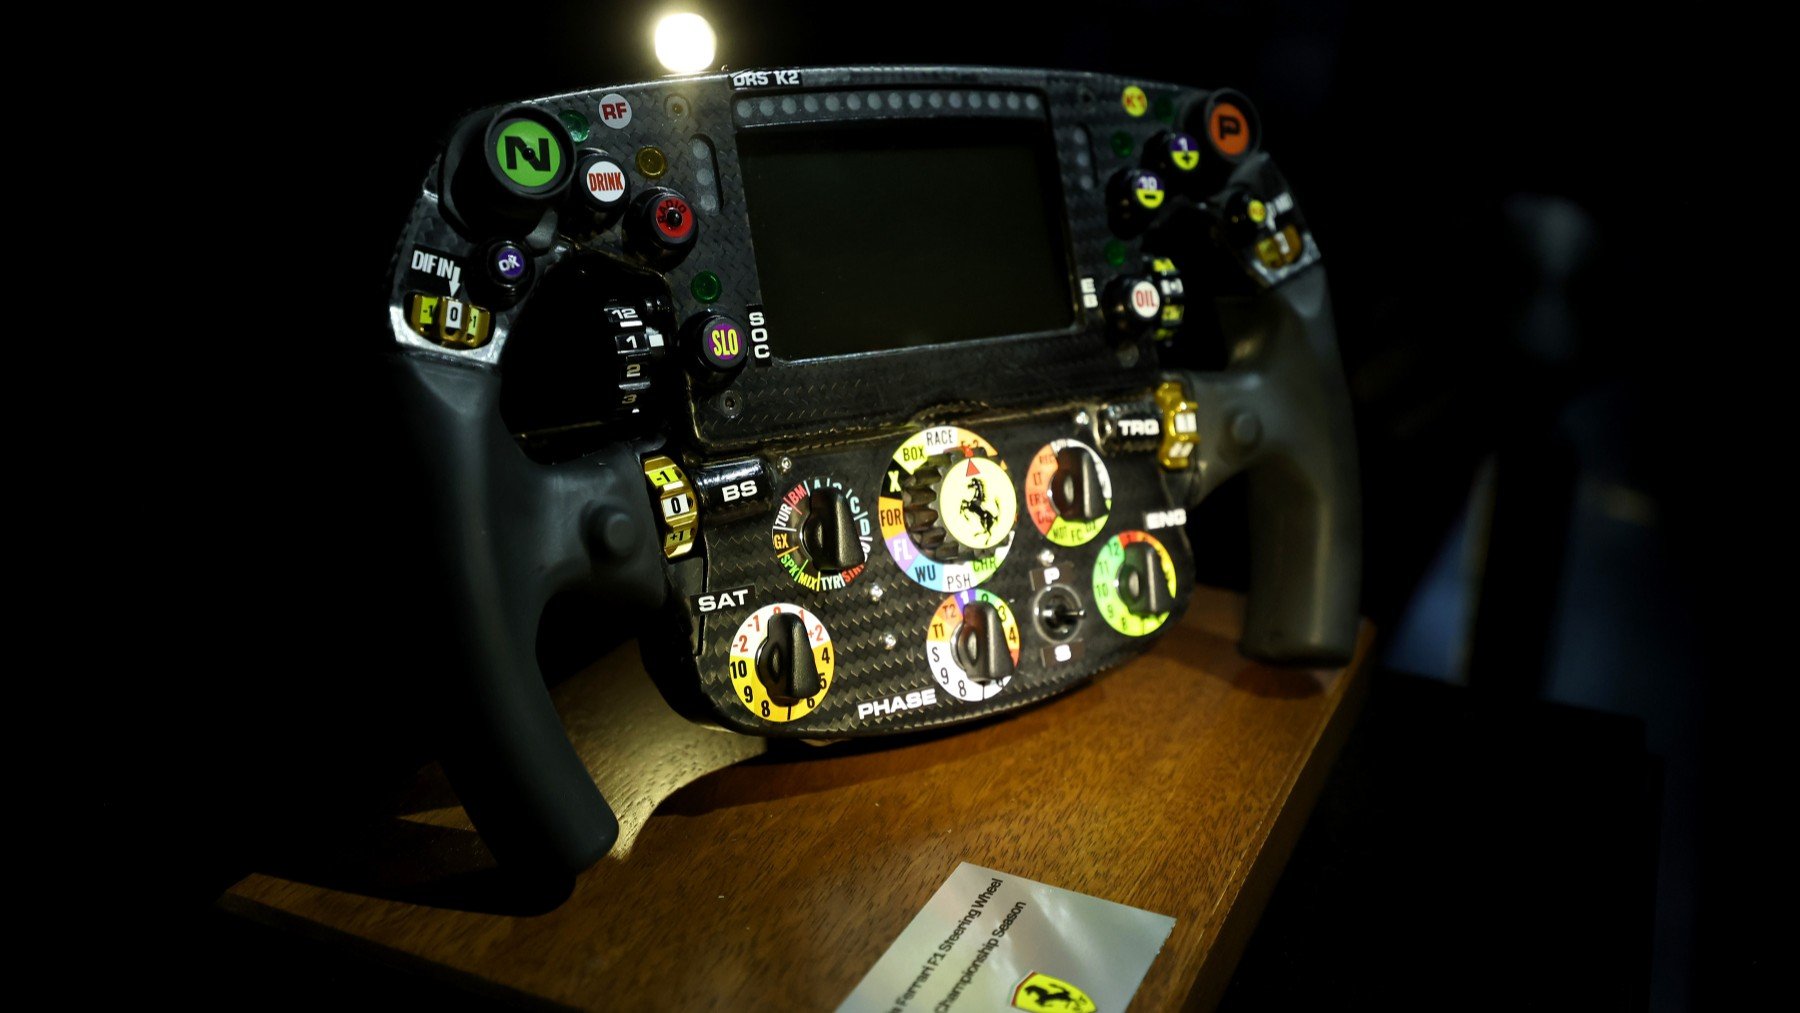 Volantes de F1: Cómo funcionan, qué hacen los botones y más